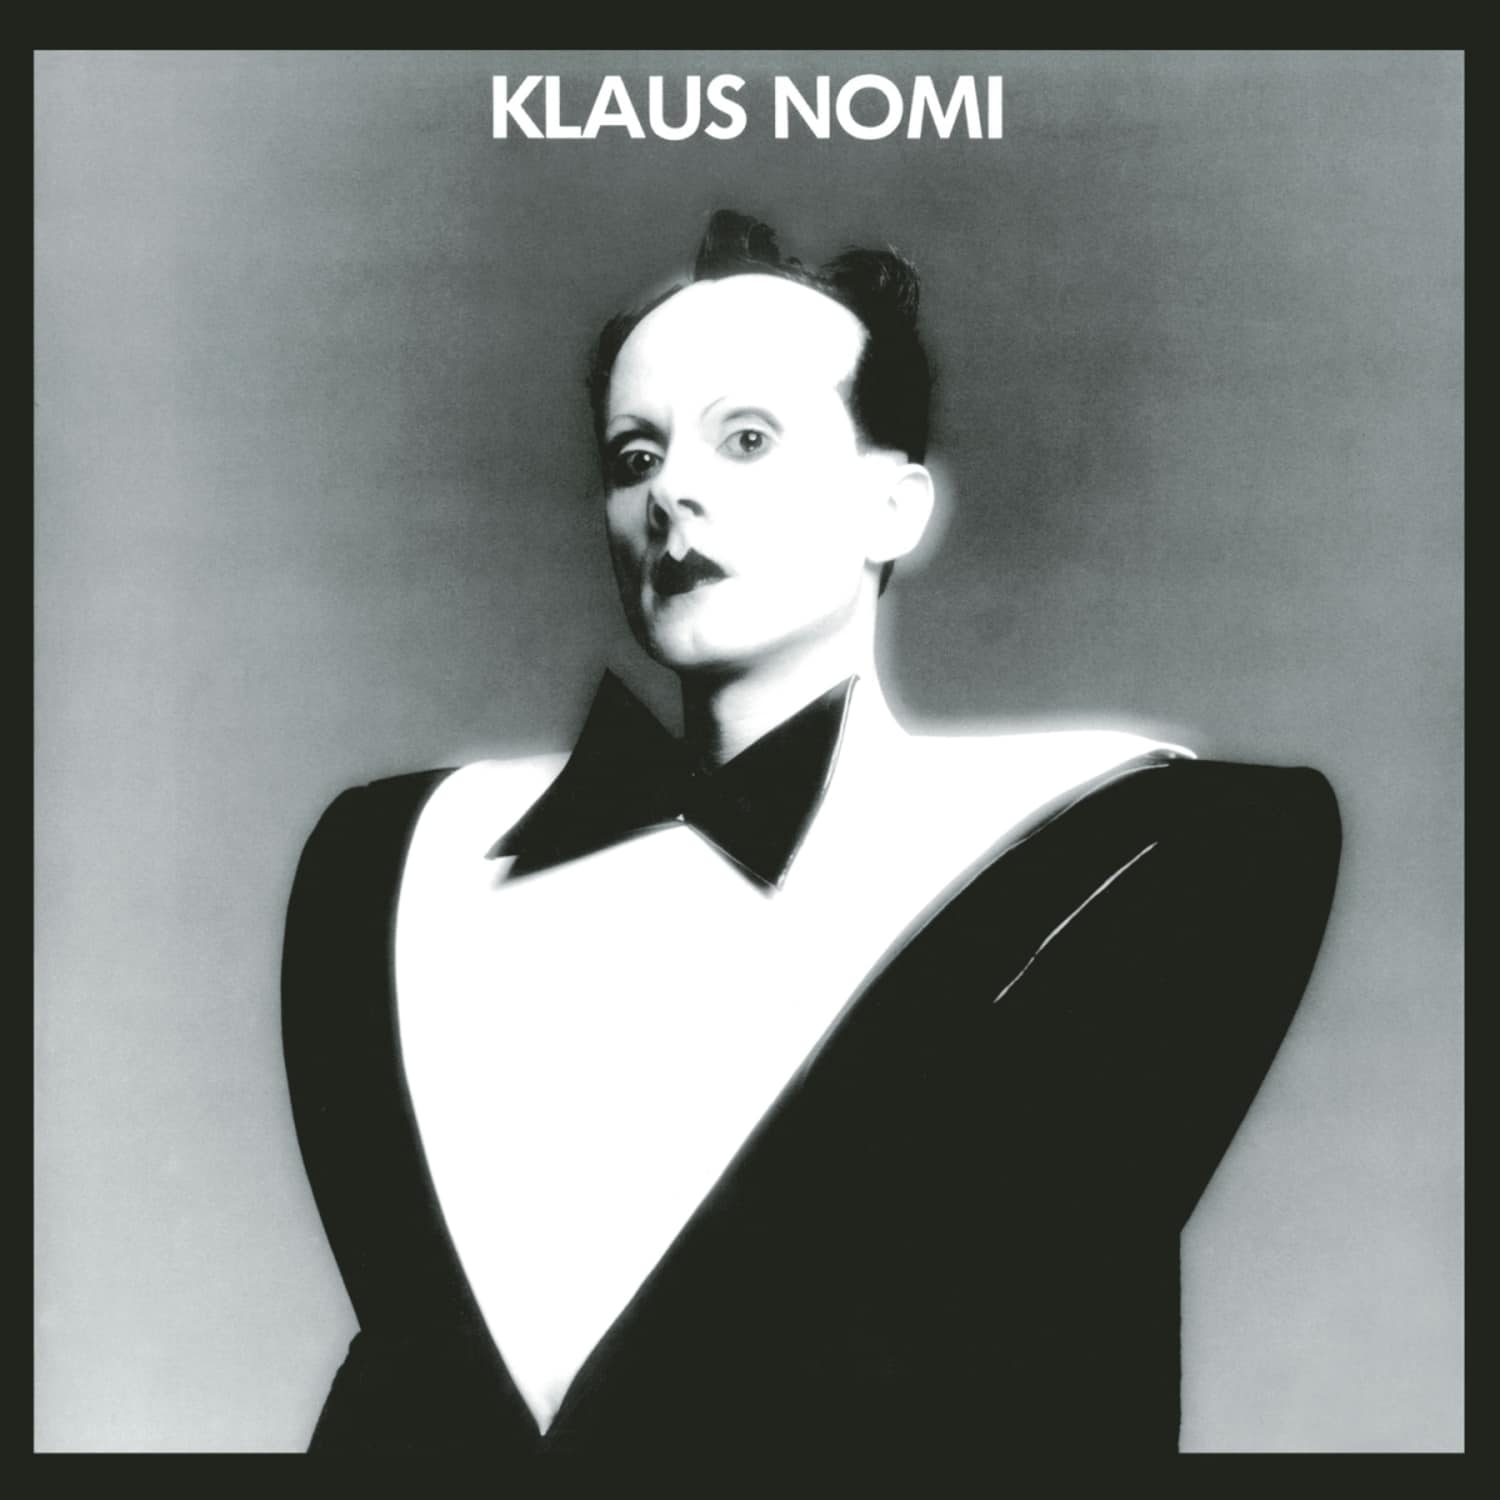 Klaus Nomi - KLAUS NOMI 